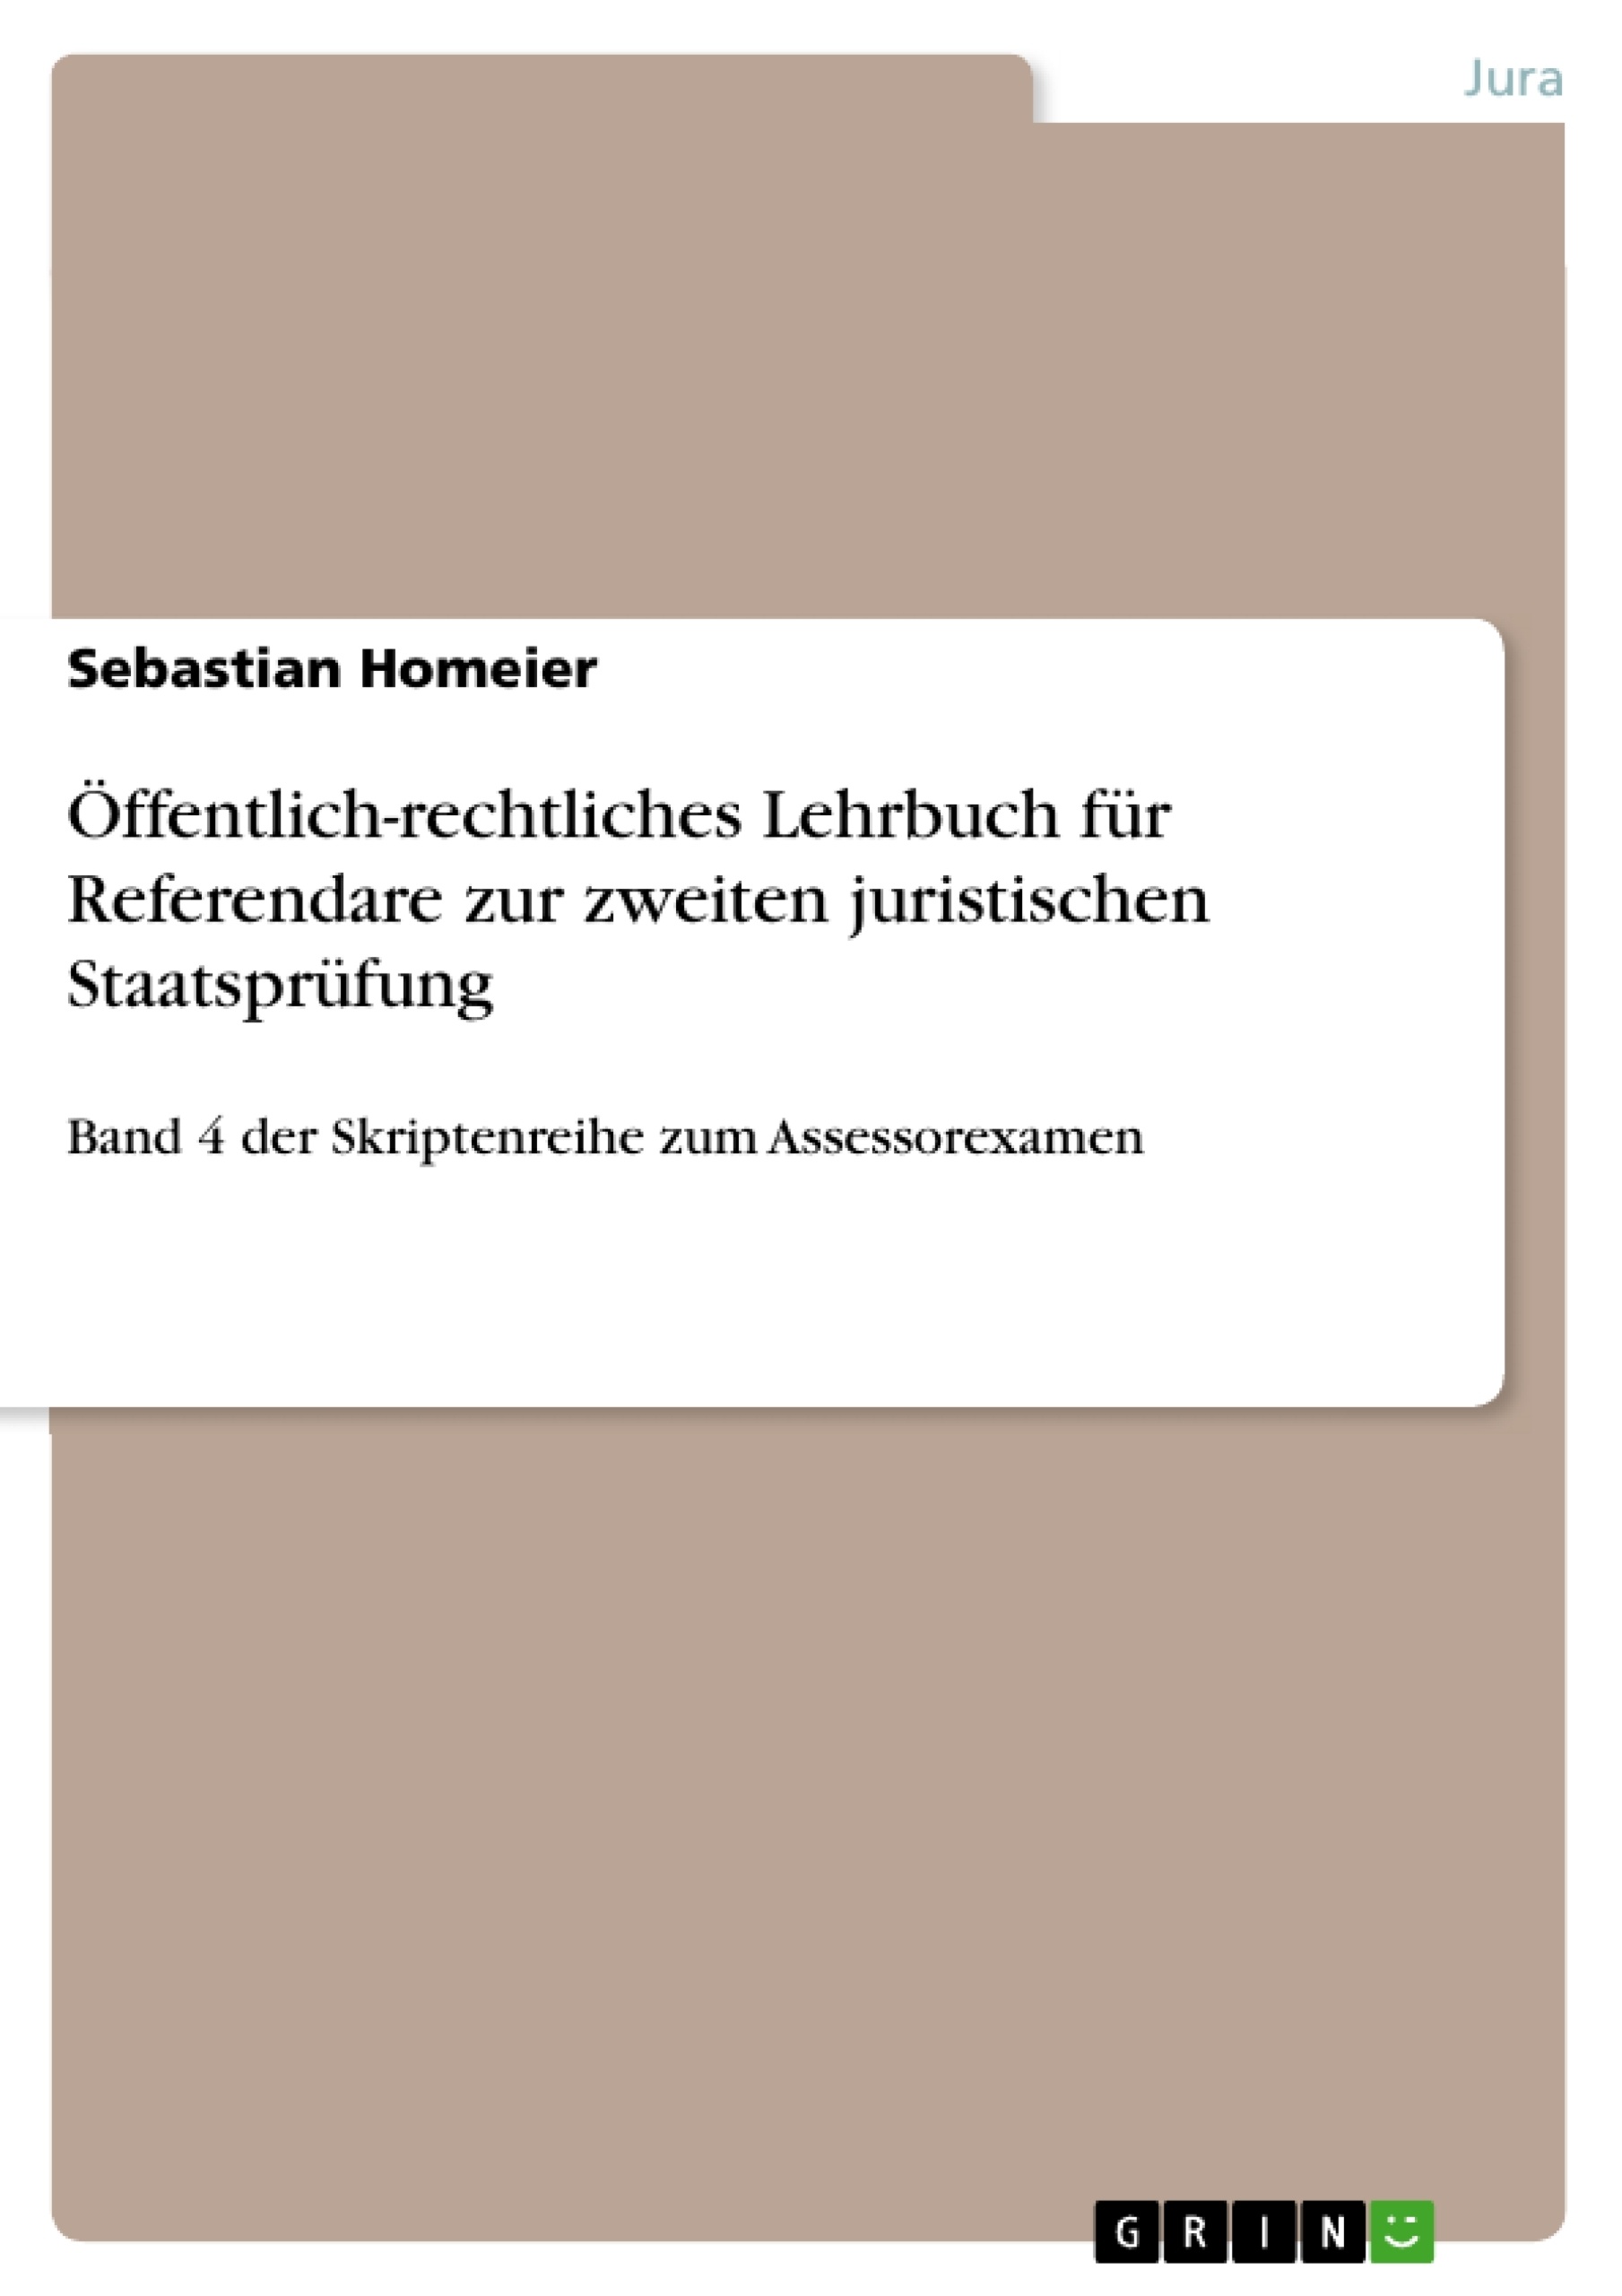 Titre: Öffentlich-rechtliches Lehrbuch für Referendare zur zweiten juristischen Staatsprüfung